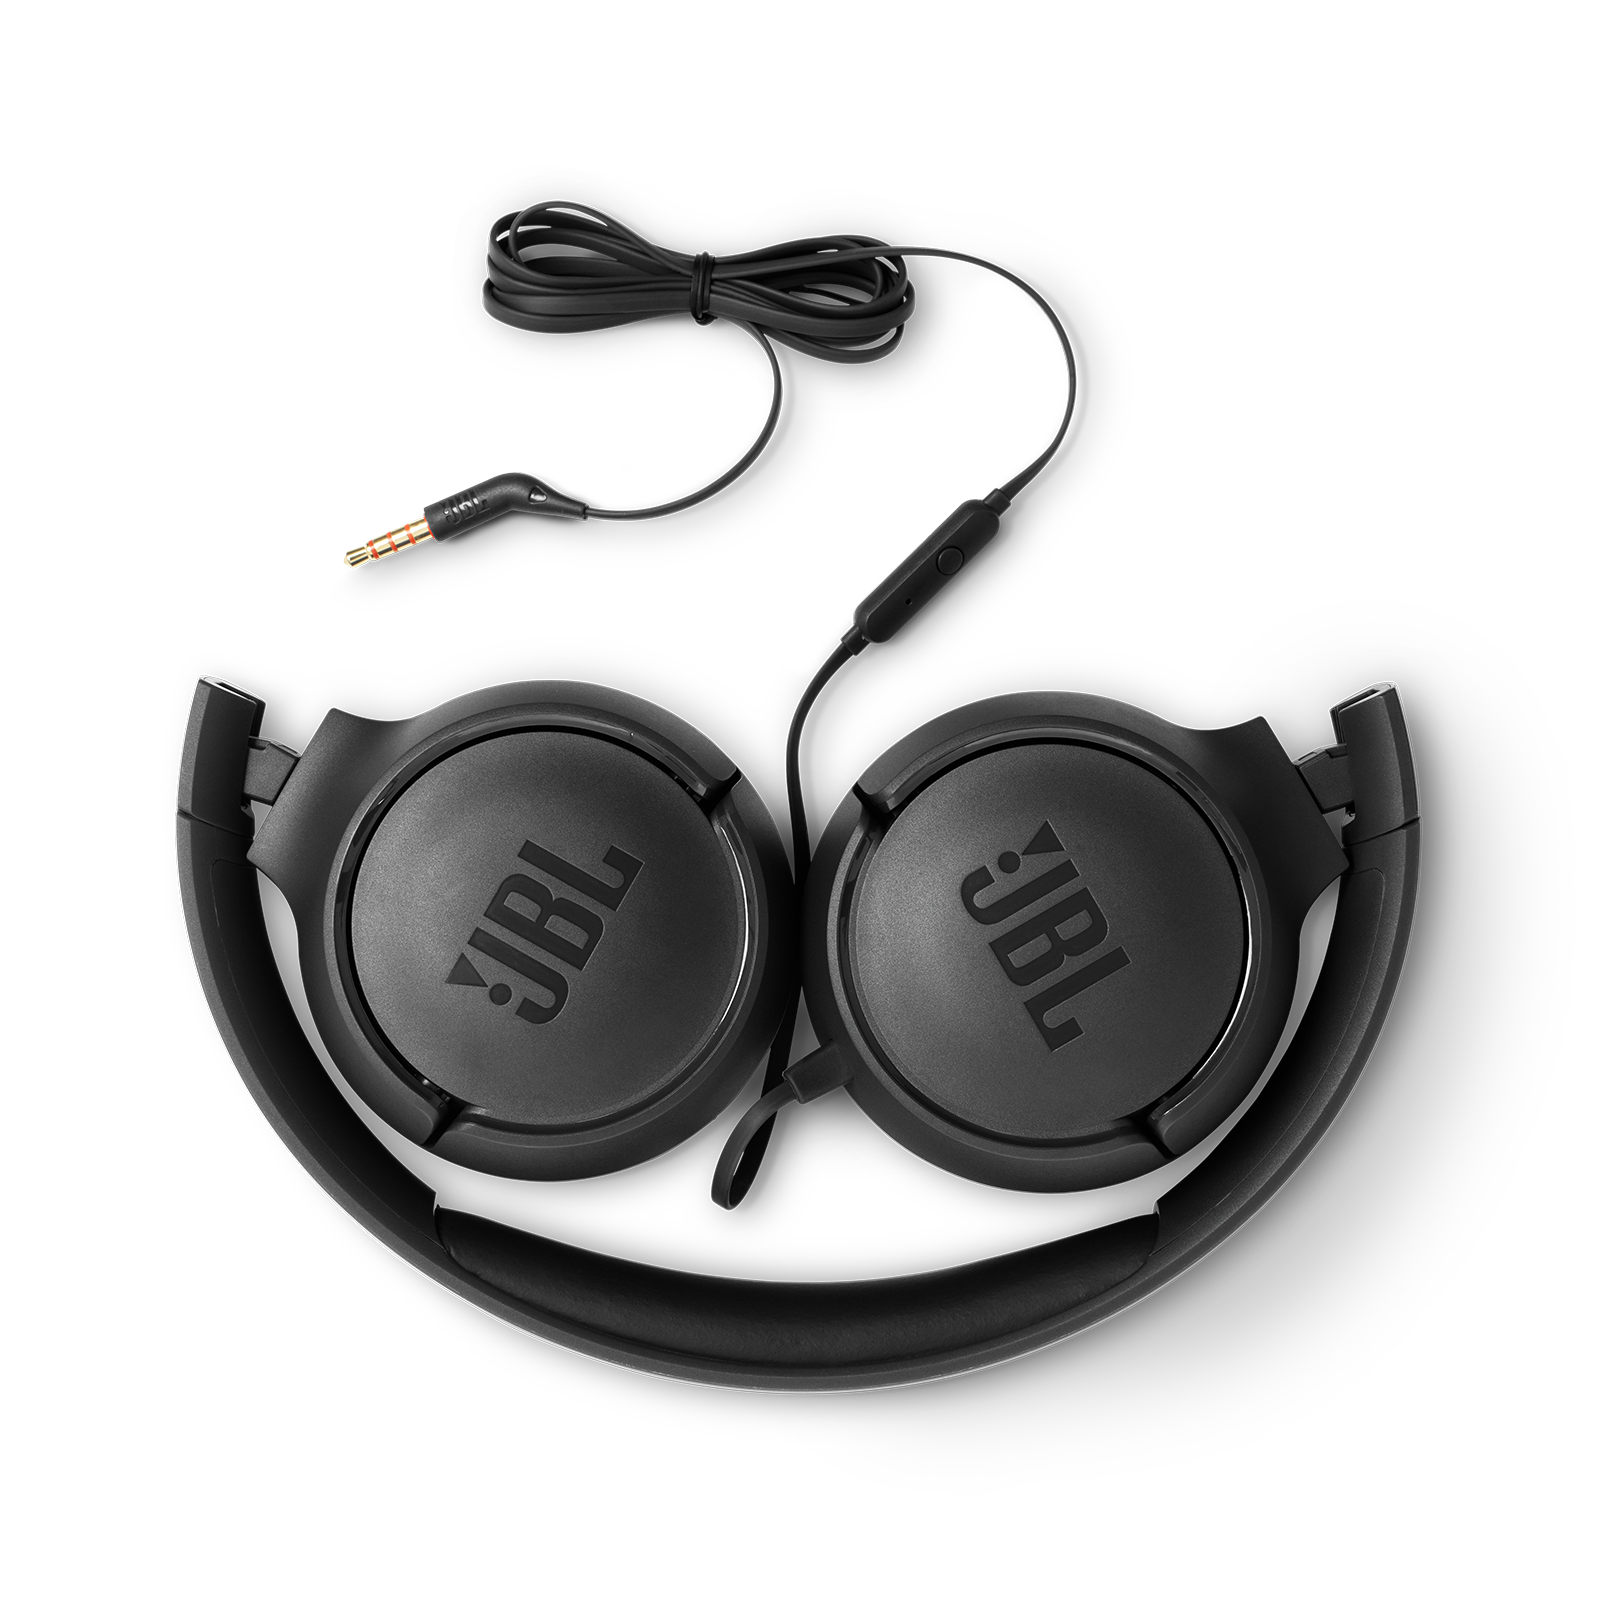 JBL Tune 500 mobile headset Binaural Head-band Black